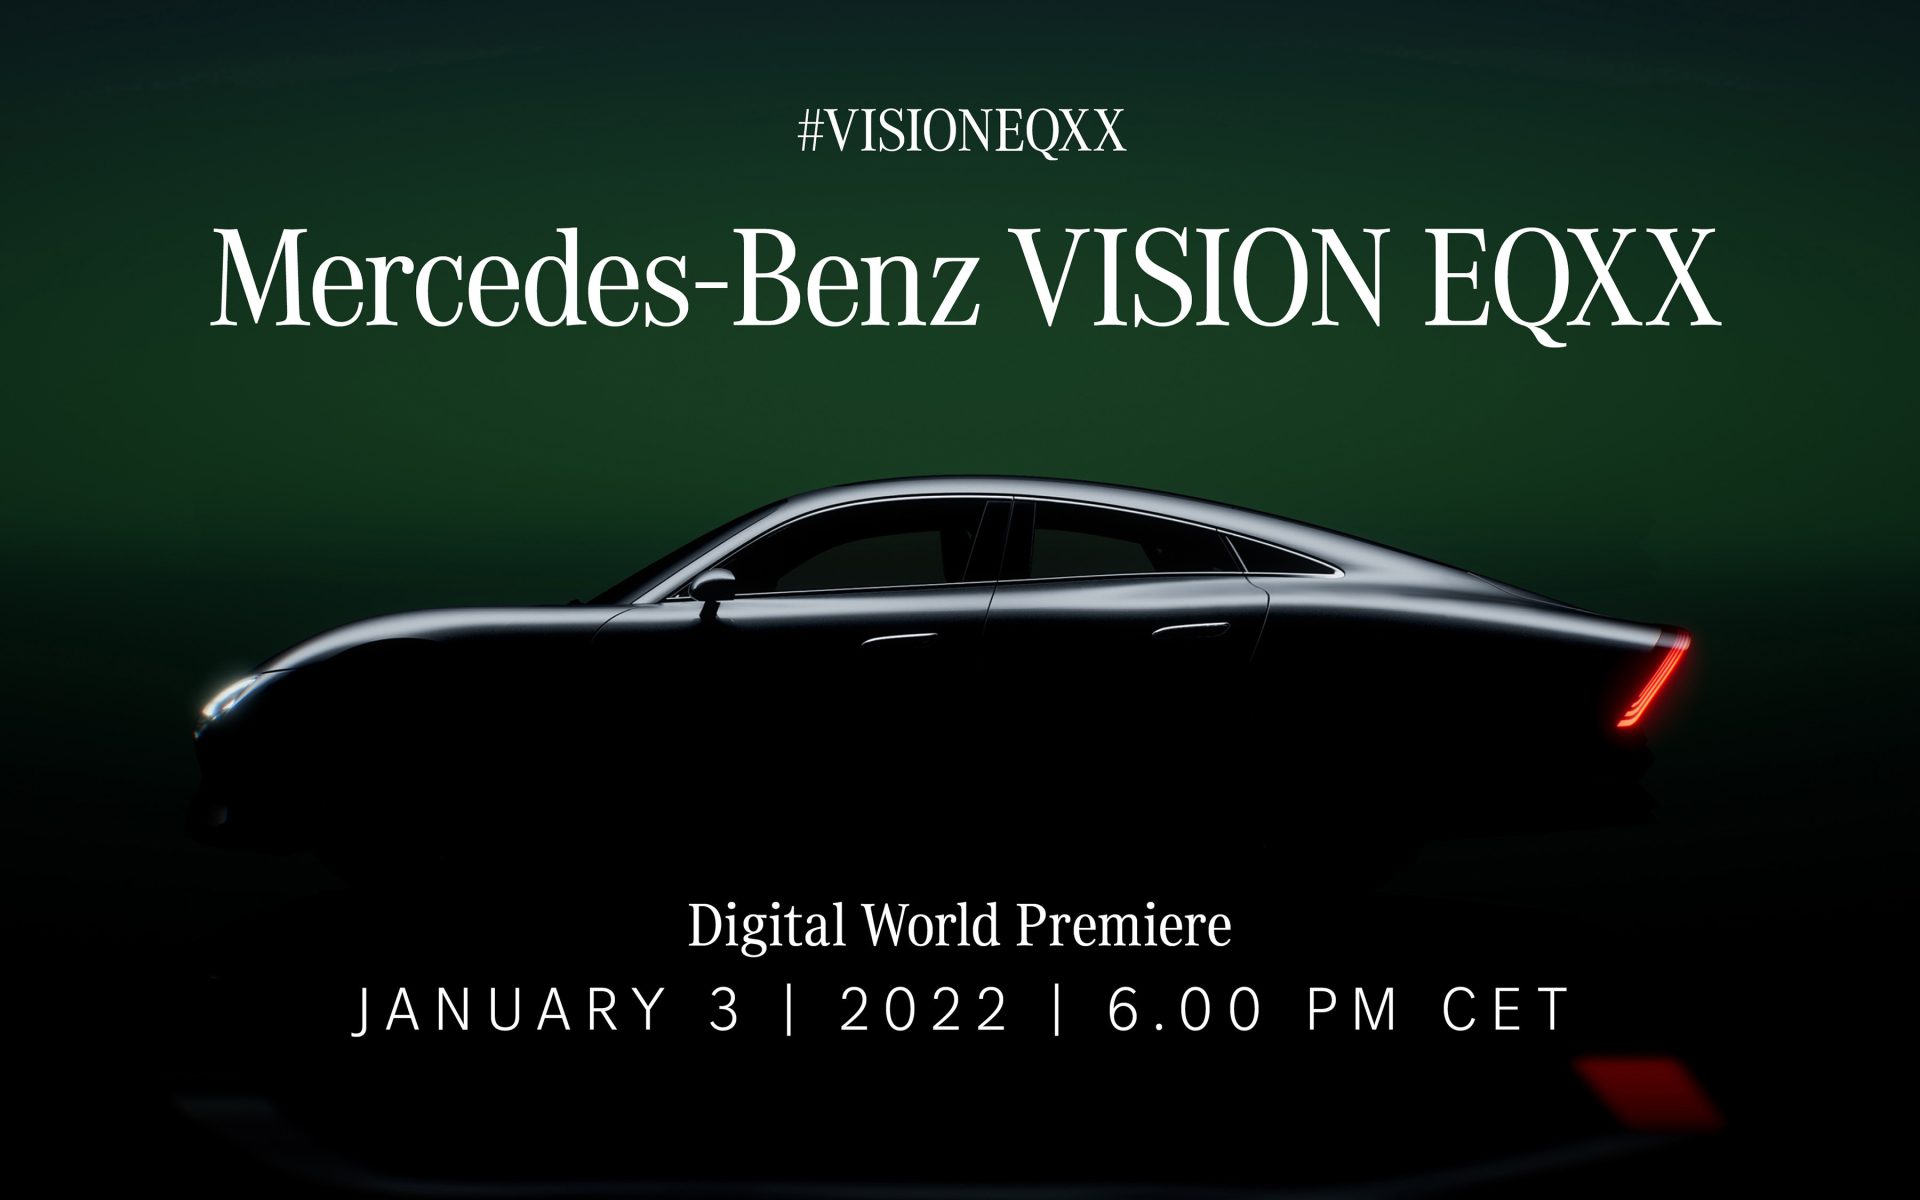 Mercedes-Benz Vision EQXX 

Mercedes-Benz Vision EQXX